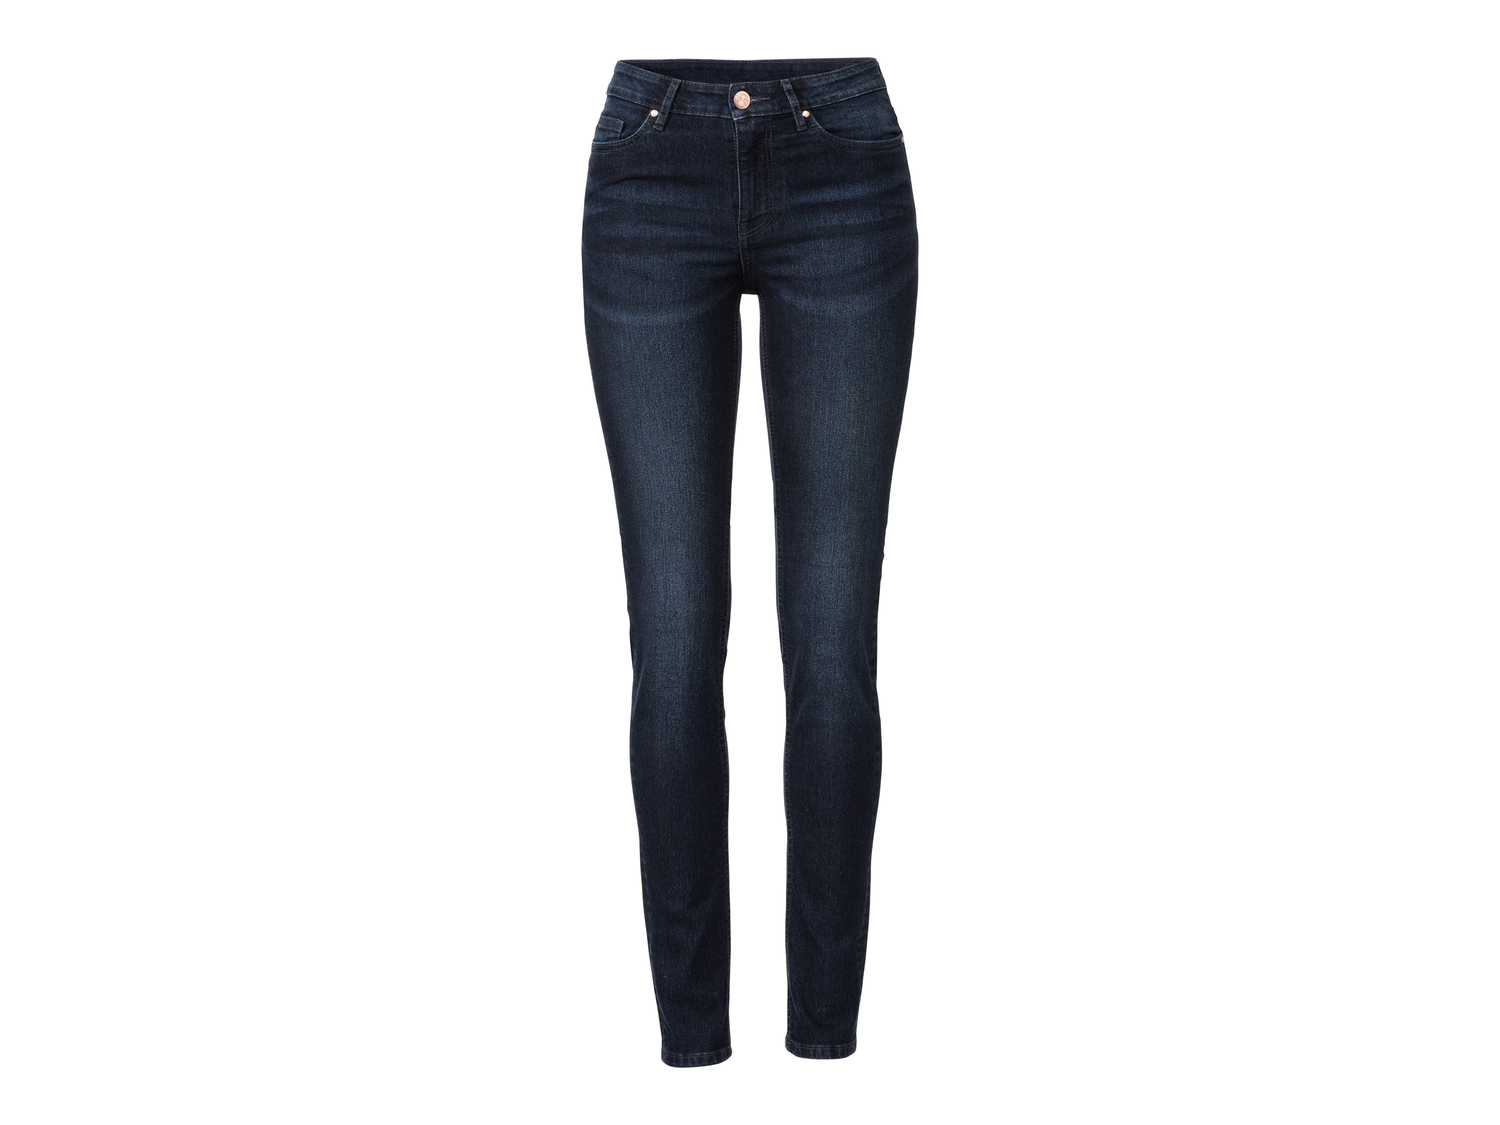 Jeans Skinny da donna Esmara, prezzo 11.99 &#8364; 
Misure: 38-46
Taglie disponibili

Caratteristiche

- ...